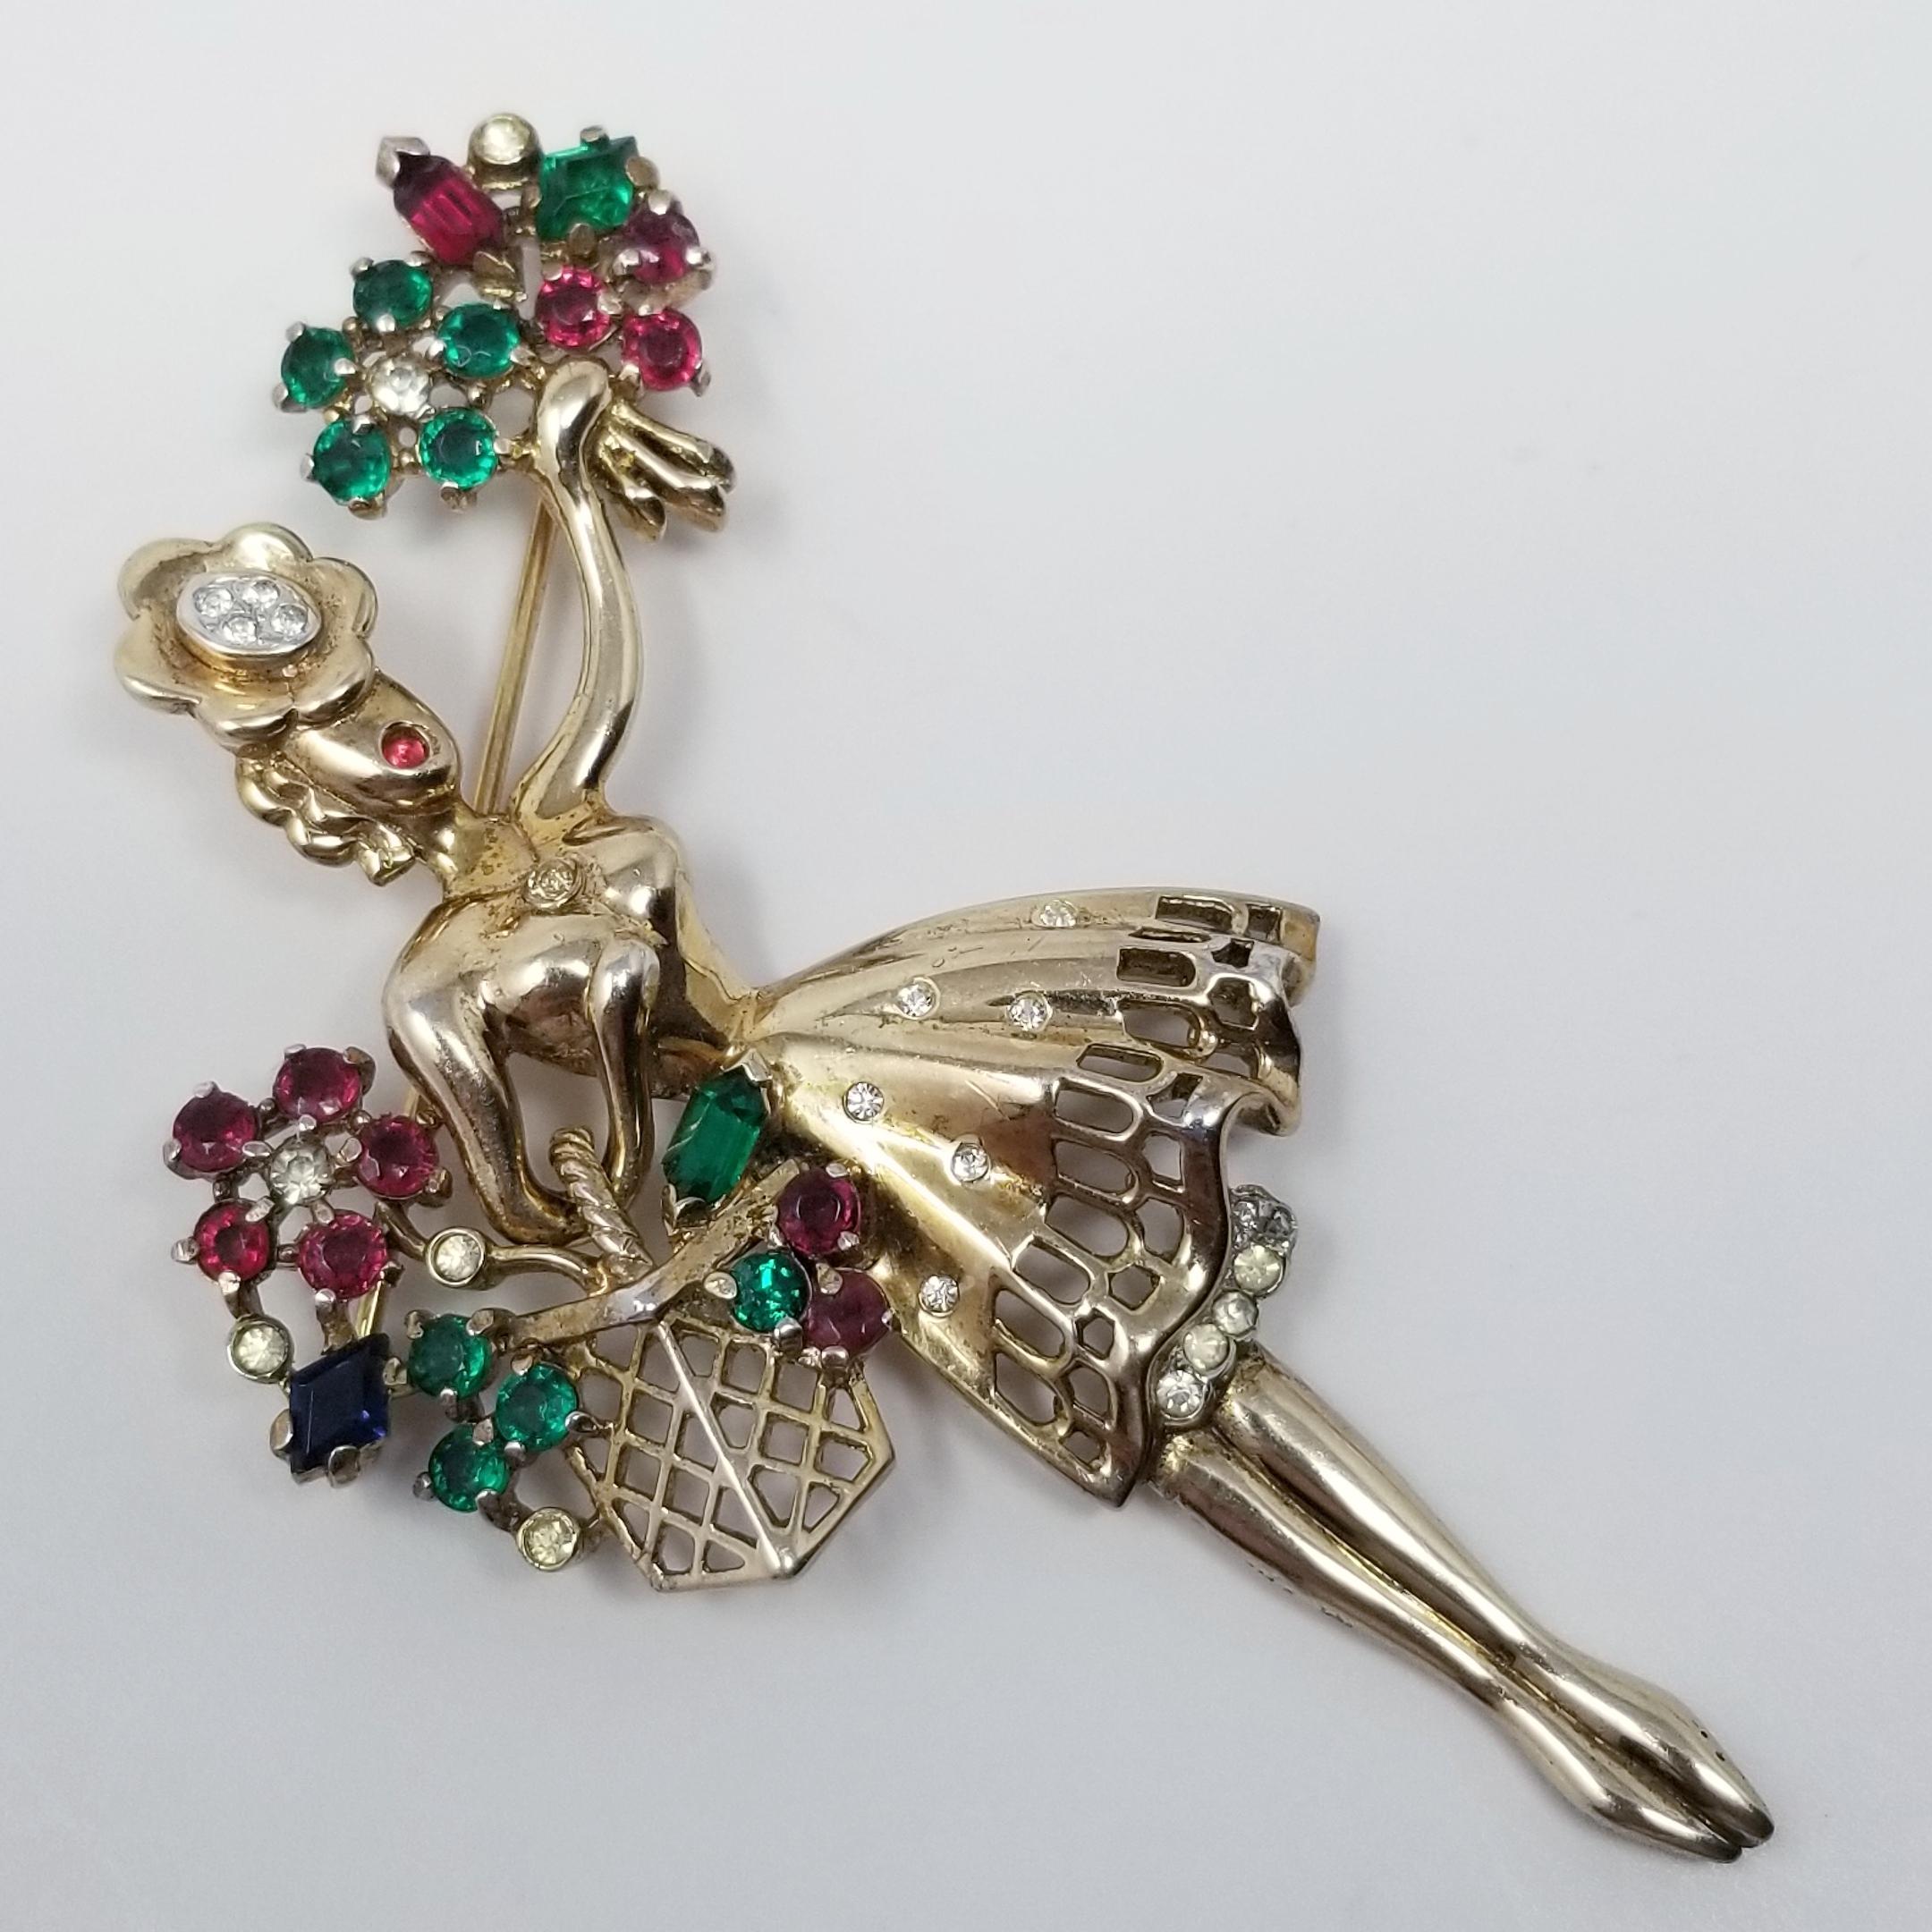 Ein Vintage 1947 Trifari Crown unterzeichnet Blumenmädchen. Facettierte simulierte Rubin-:: Smaragd-:: Saphir- und klare farbige Strasssteine. Entworfen von Alfred Philippe. Produziert von Trifari:: Krussman & Fishel. Zum Patent angemeldete Marke.